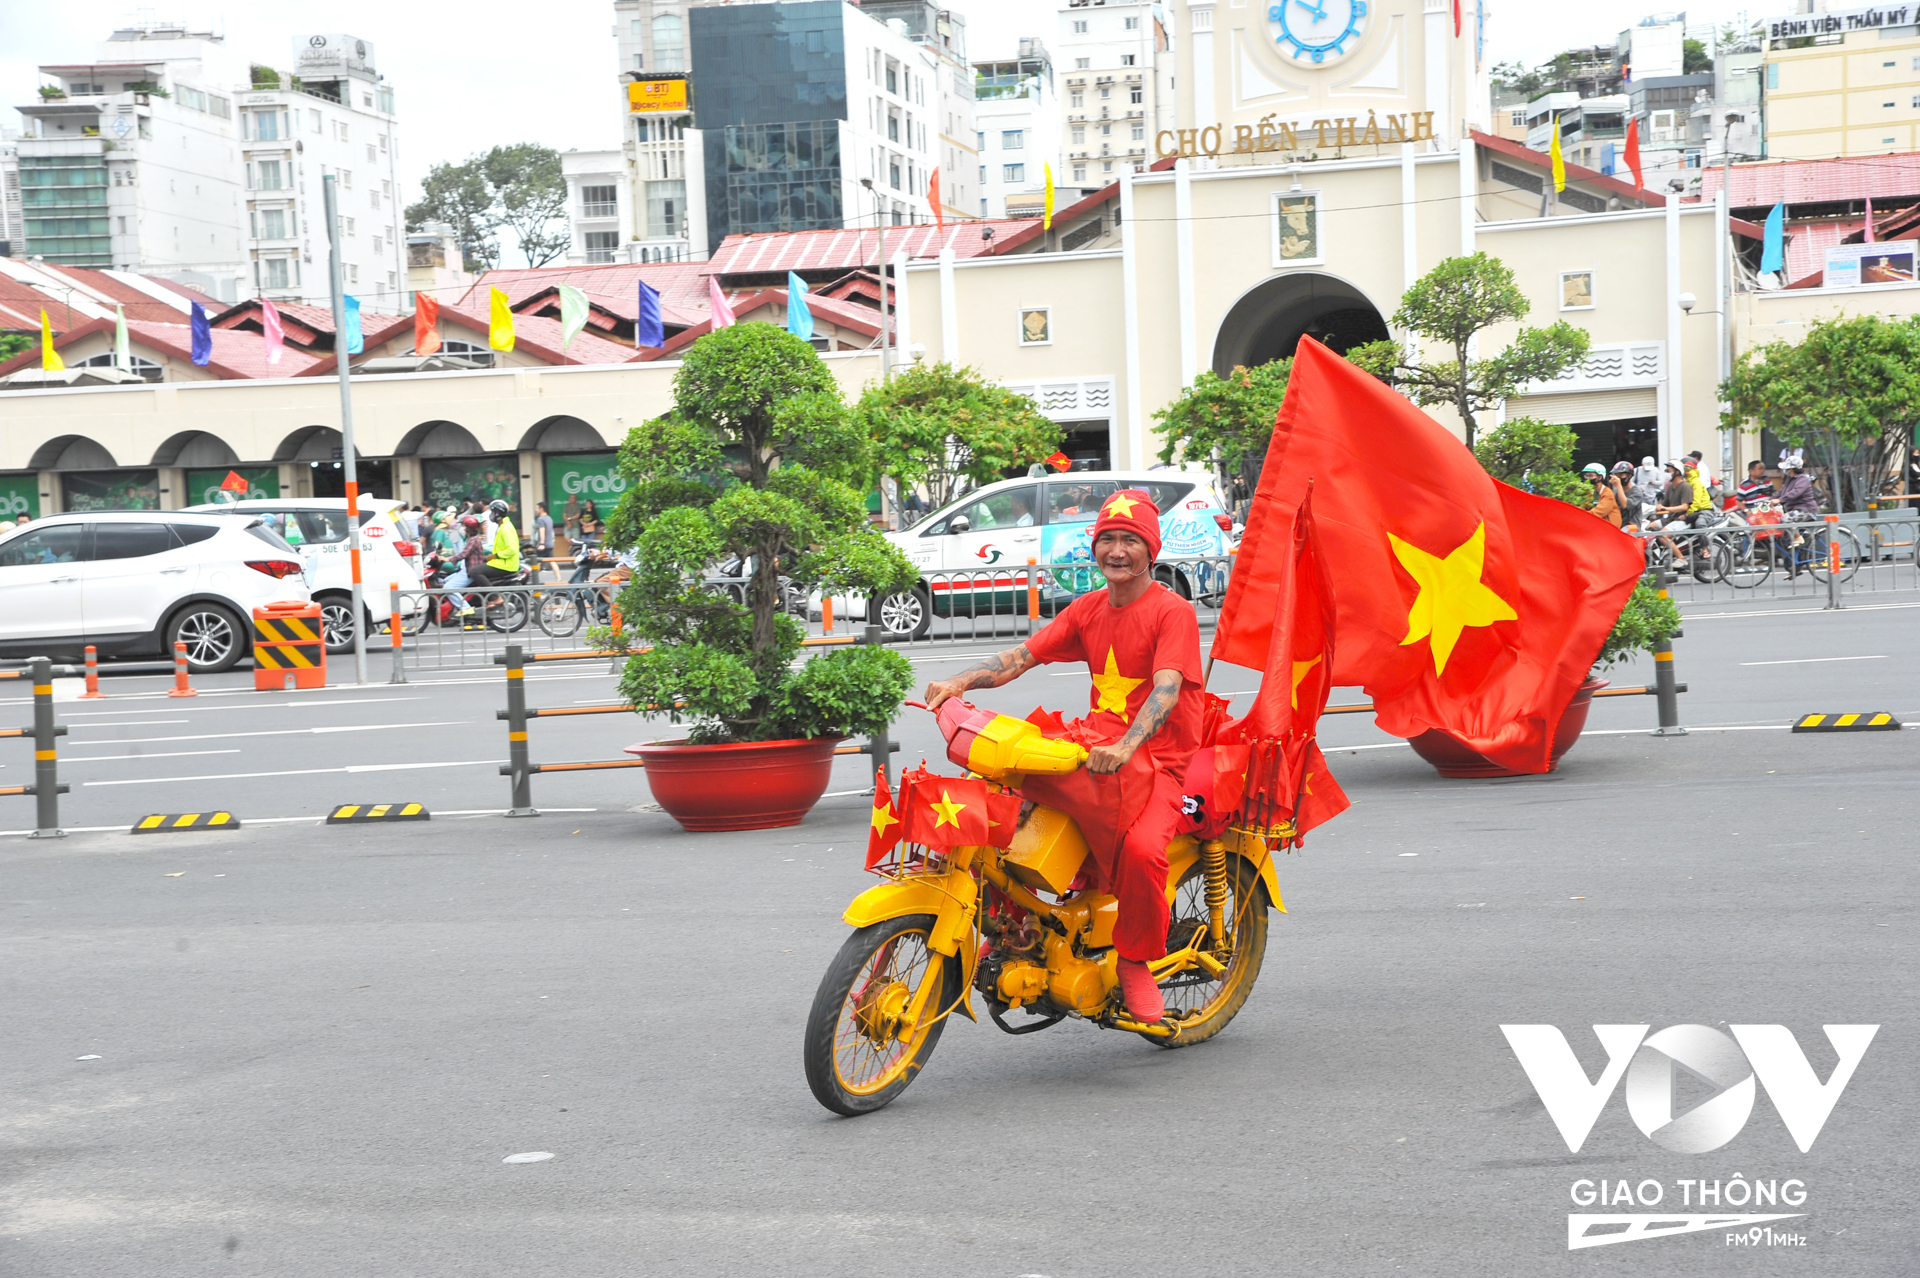 Chiếc xe máy được sơn với 2 màu chủ đạo đỏ vàng được trang trí bởi các lá cờ Tổ quốc được chú T. (người Việt gốc Hoa) chạy khắp các con đường ở trung tâm TP vào sáng 2/9.